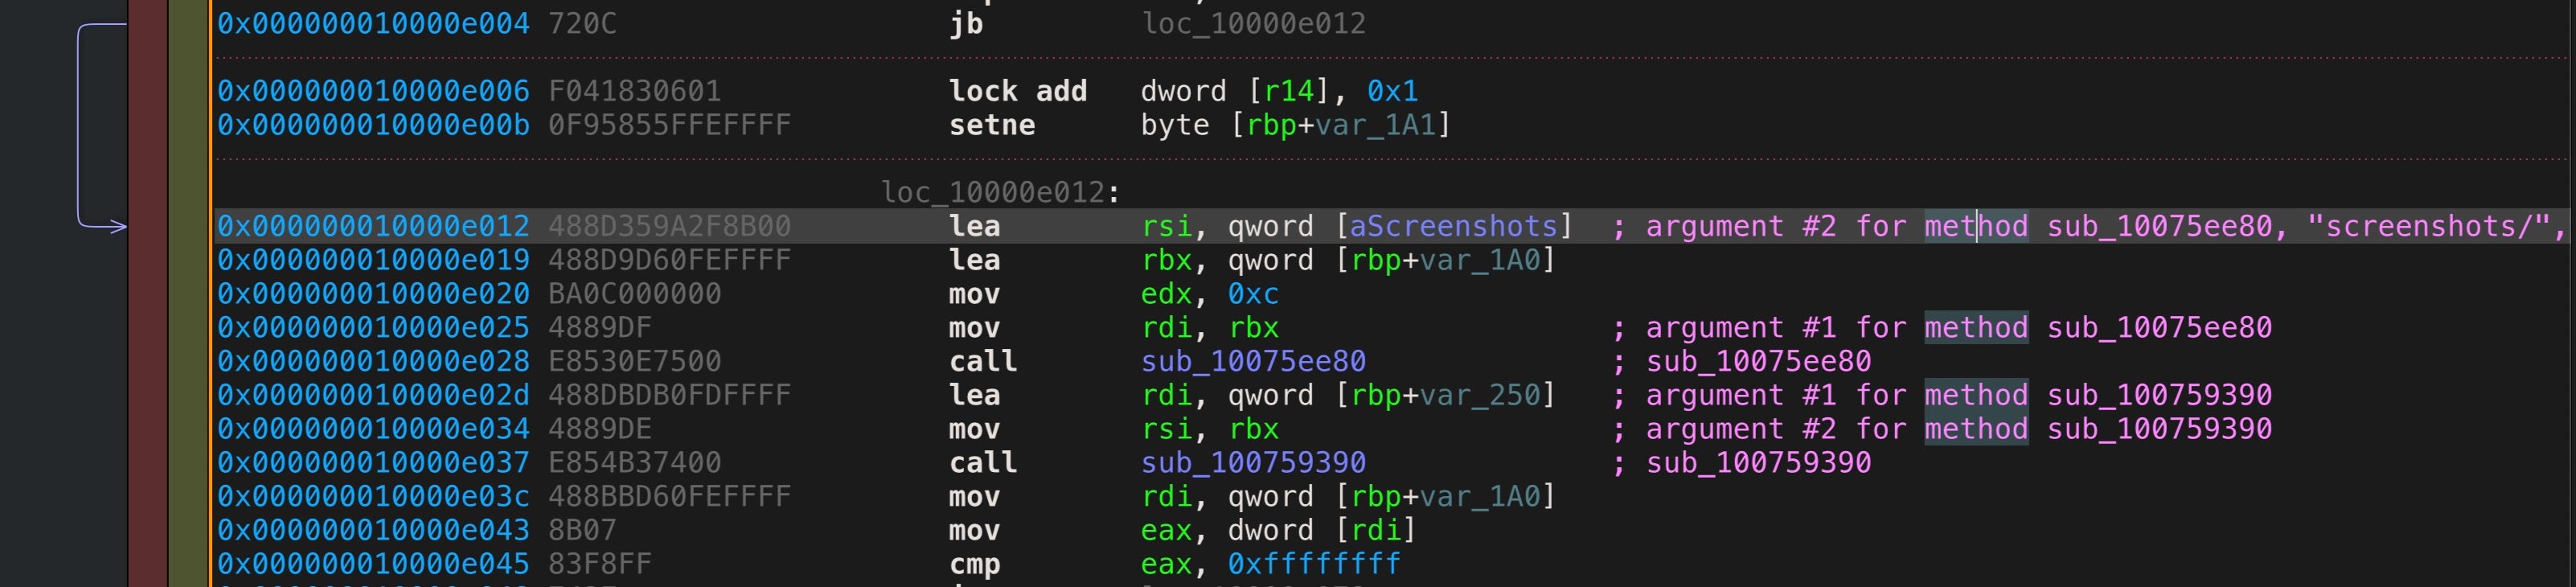 image of code showing screenshots